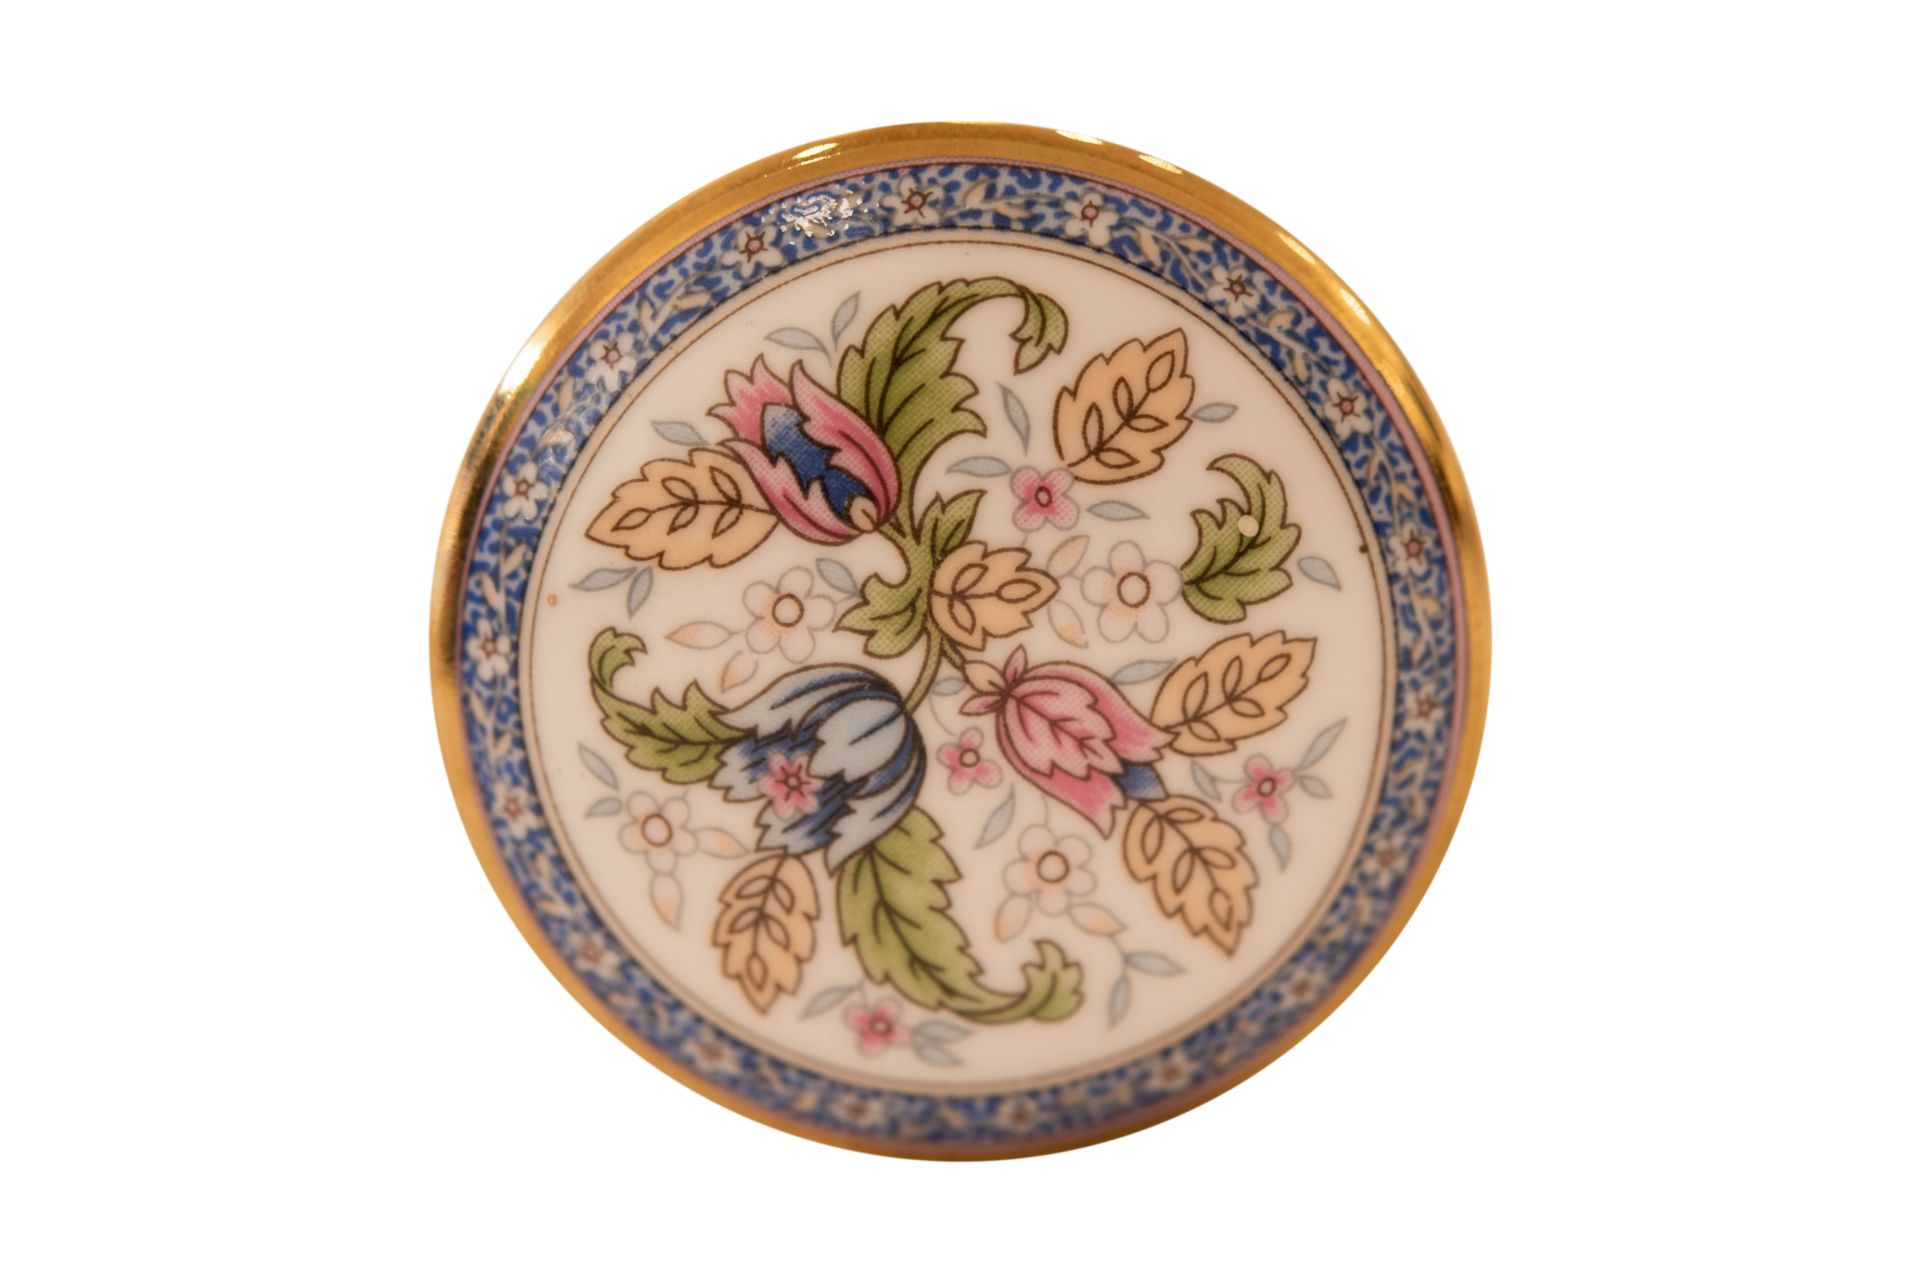 Florial Victoriana Falcon Schmuckkästchen |Florial Victoriana Falcon Jewelry Box - Bild 5 aus 5